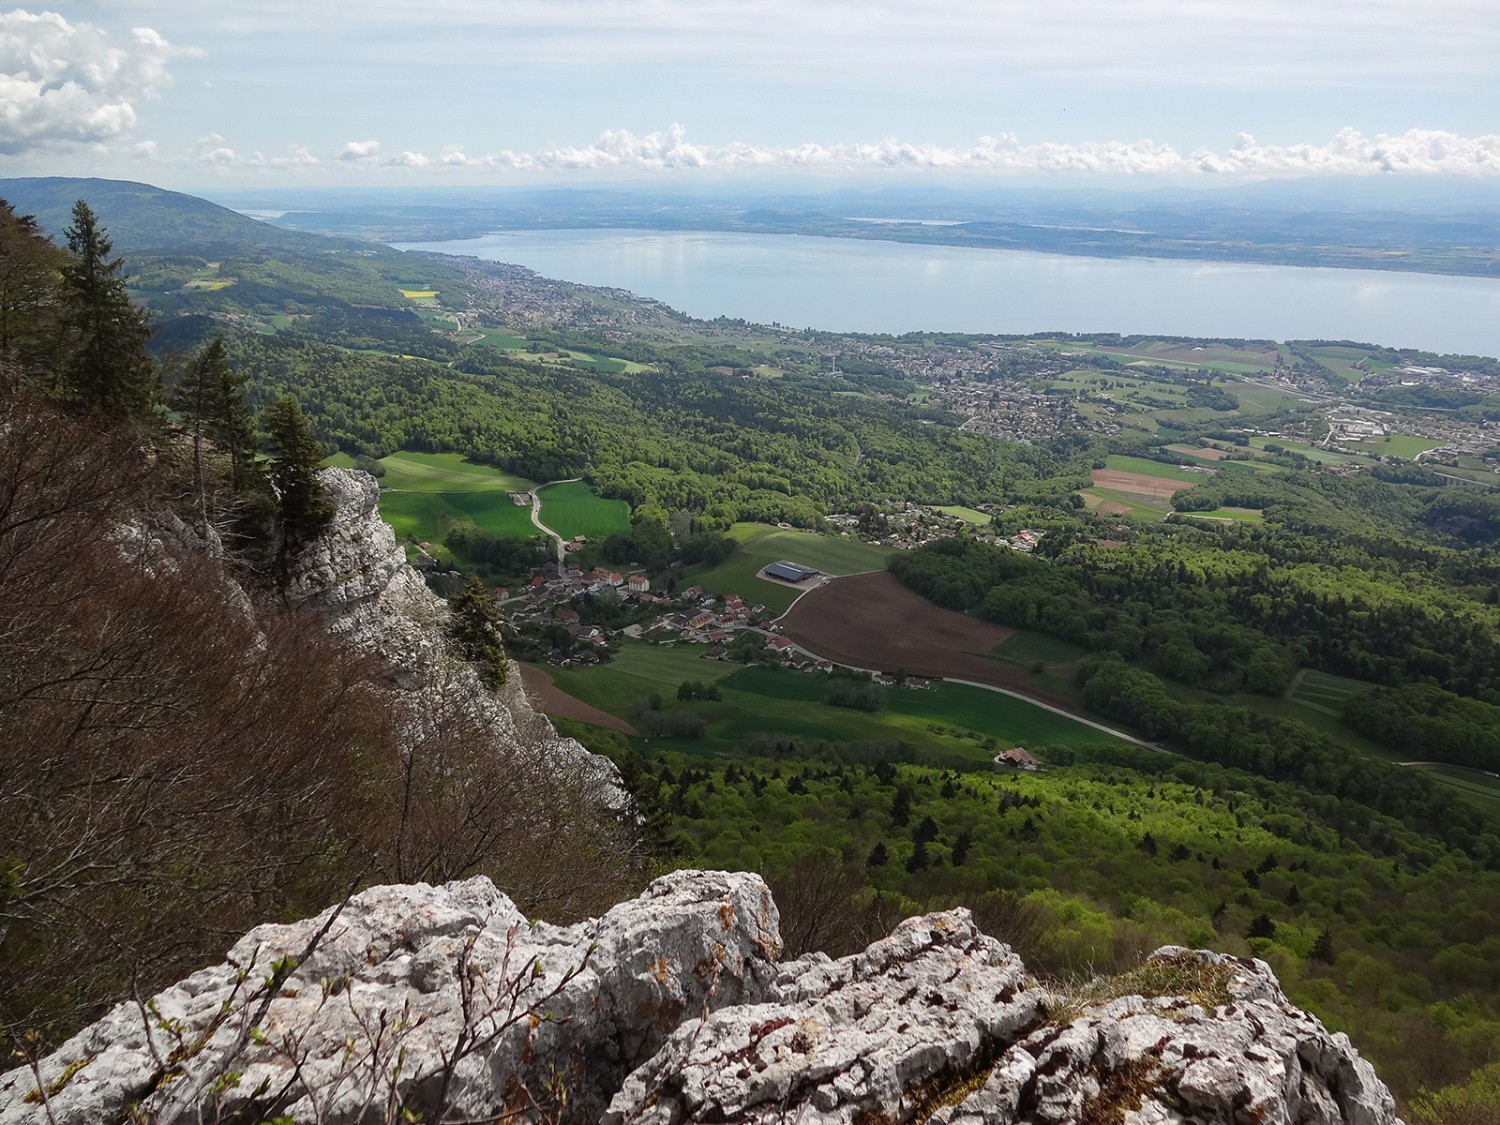 Les rochers de Tablettes offrent une magnifique vue sur le lac de Neuchâtel. Photos: M. Halaba